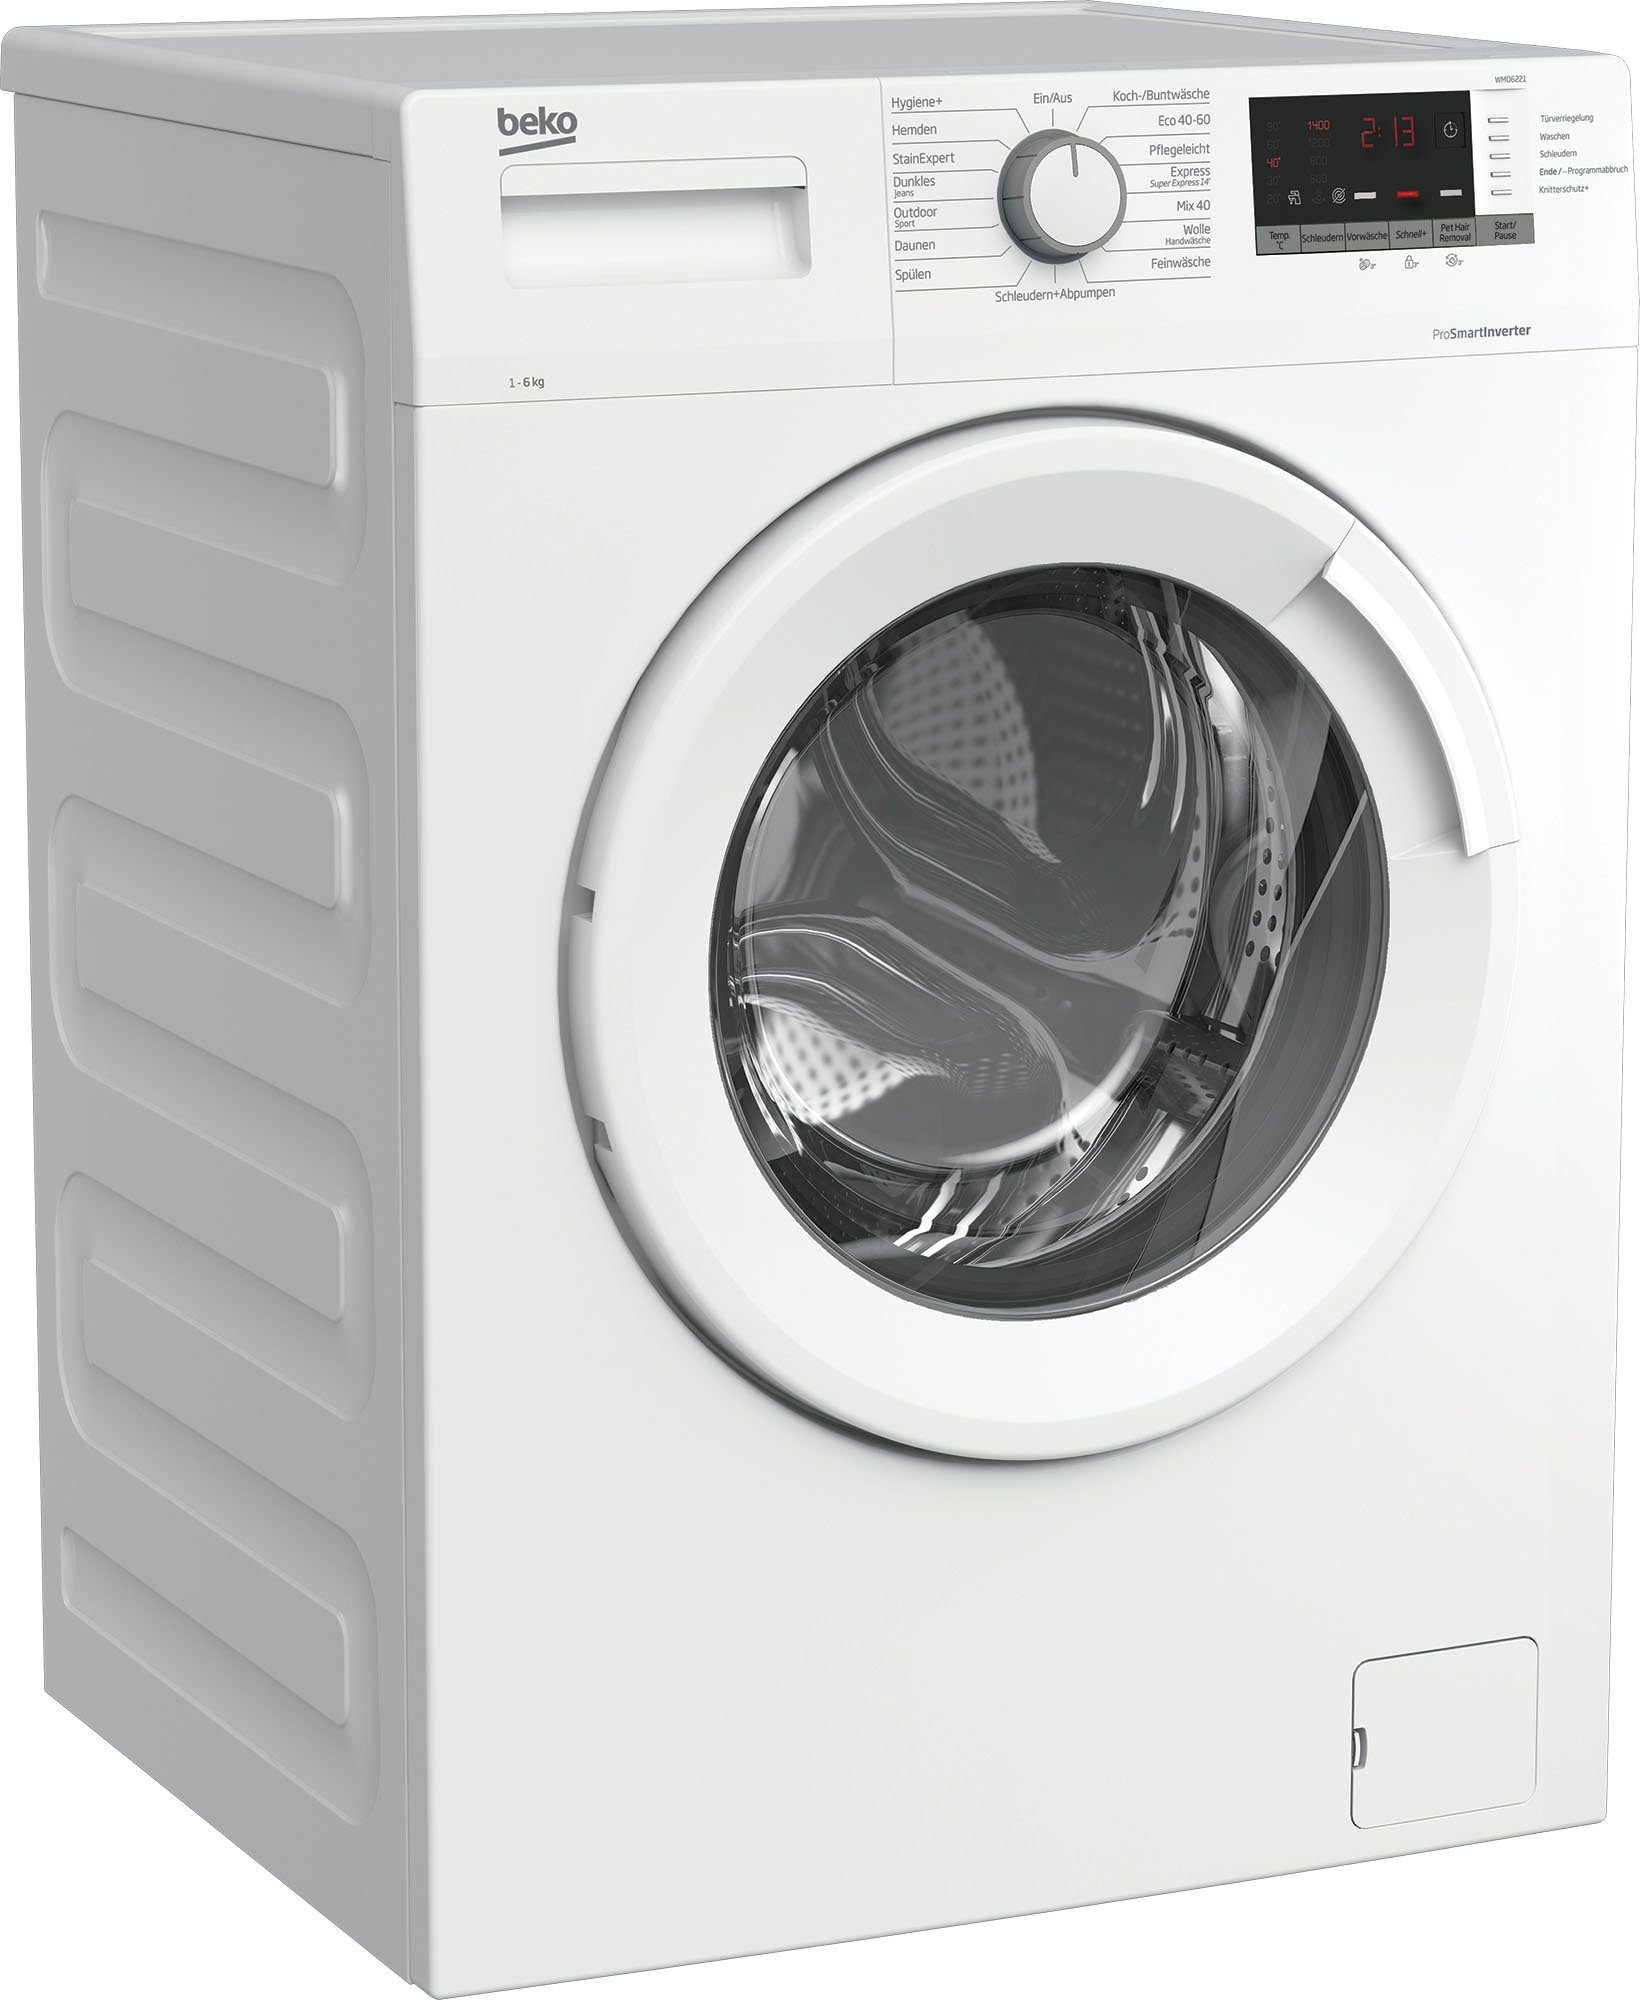 BEKO Waschmaschine WMO6221 7146543700, 6 kg, 1400 U/min online kaufen | OTTO